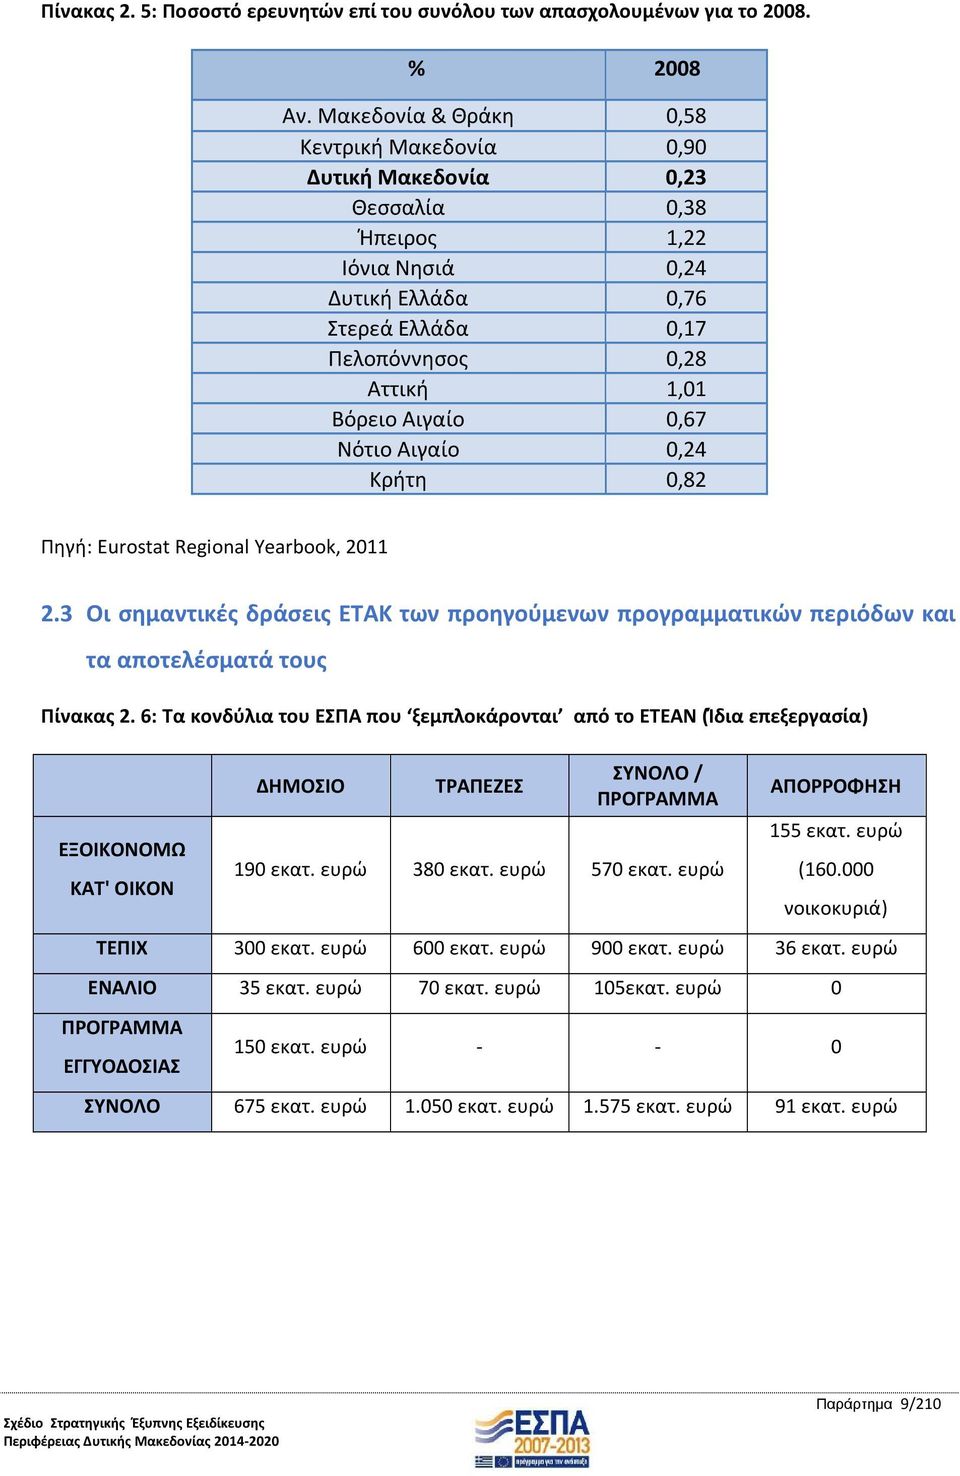 Νότιο Αιγαίο 0,24 Κρήτη 0,82 Πηγή: Eurostat Regional Yearbook, 2011 2.3 Οι σημαντικές δράσεις ΕΤΑΚ των προηγούμενων προγραμματικών περιόδων και τα αποτελέσματά τους Πίνακας 2.